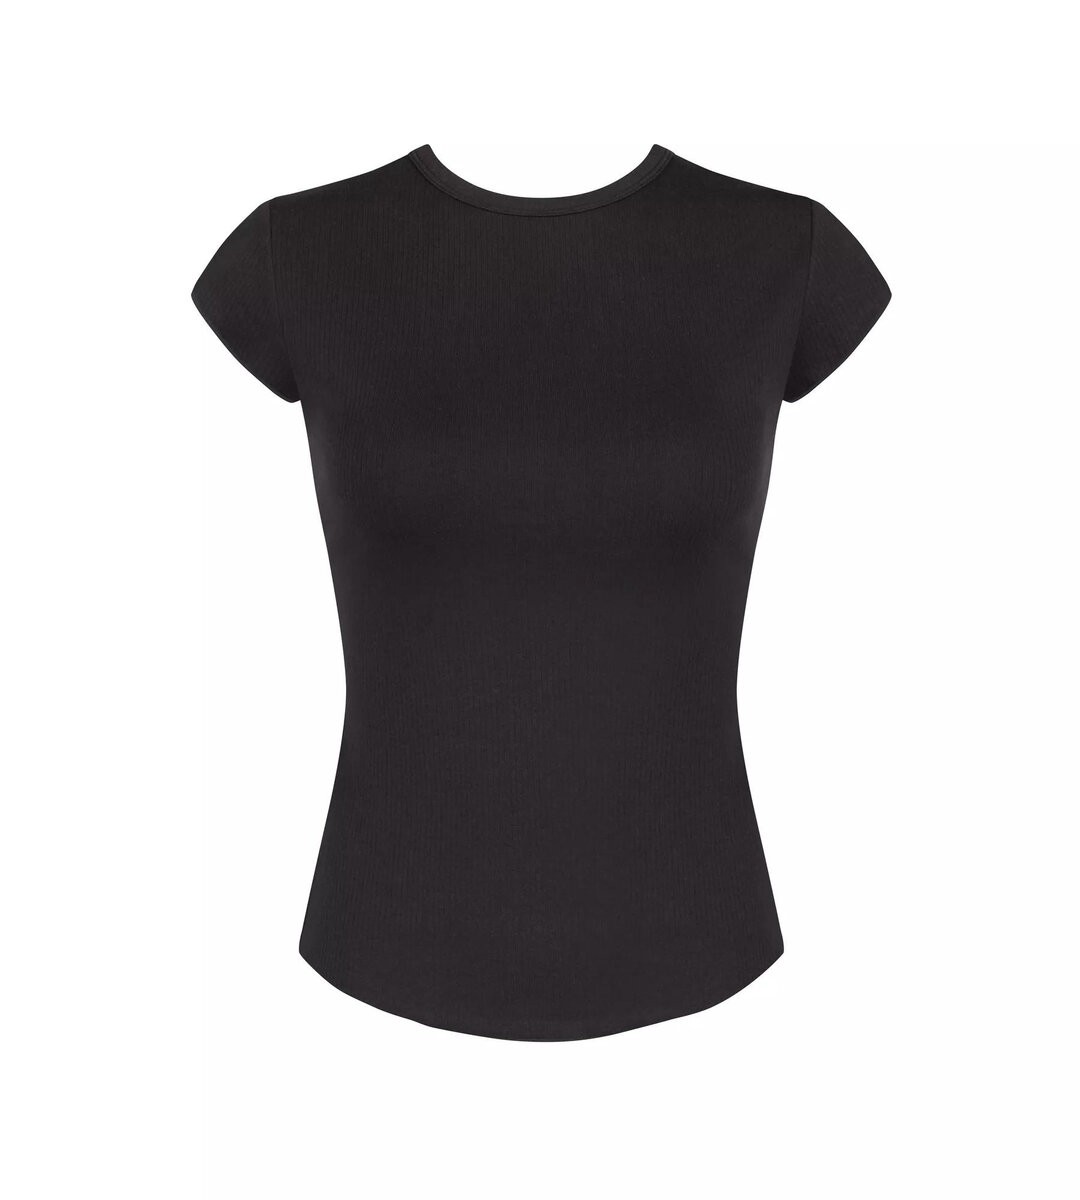 Černé dámské tričko Ribbed Comfort - Sloggi, BLACK L i343_10217723-0004-L